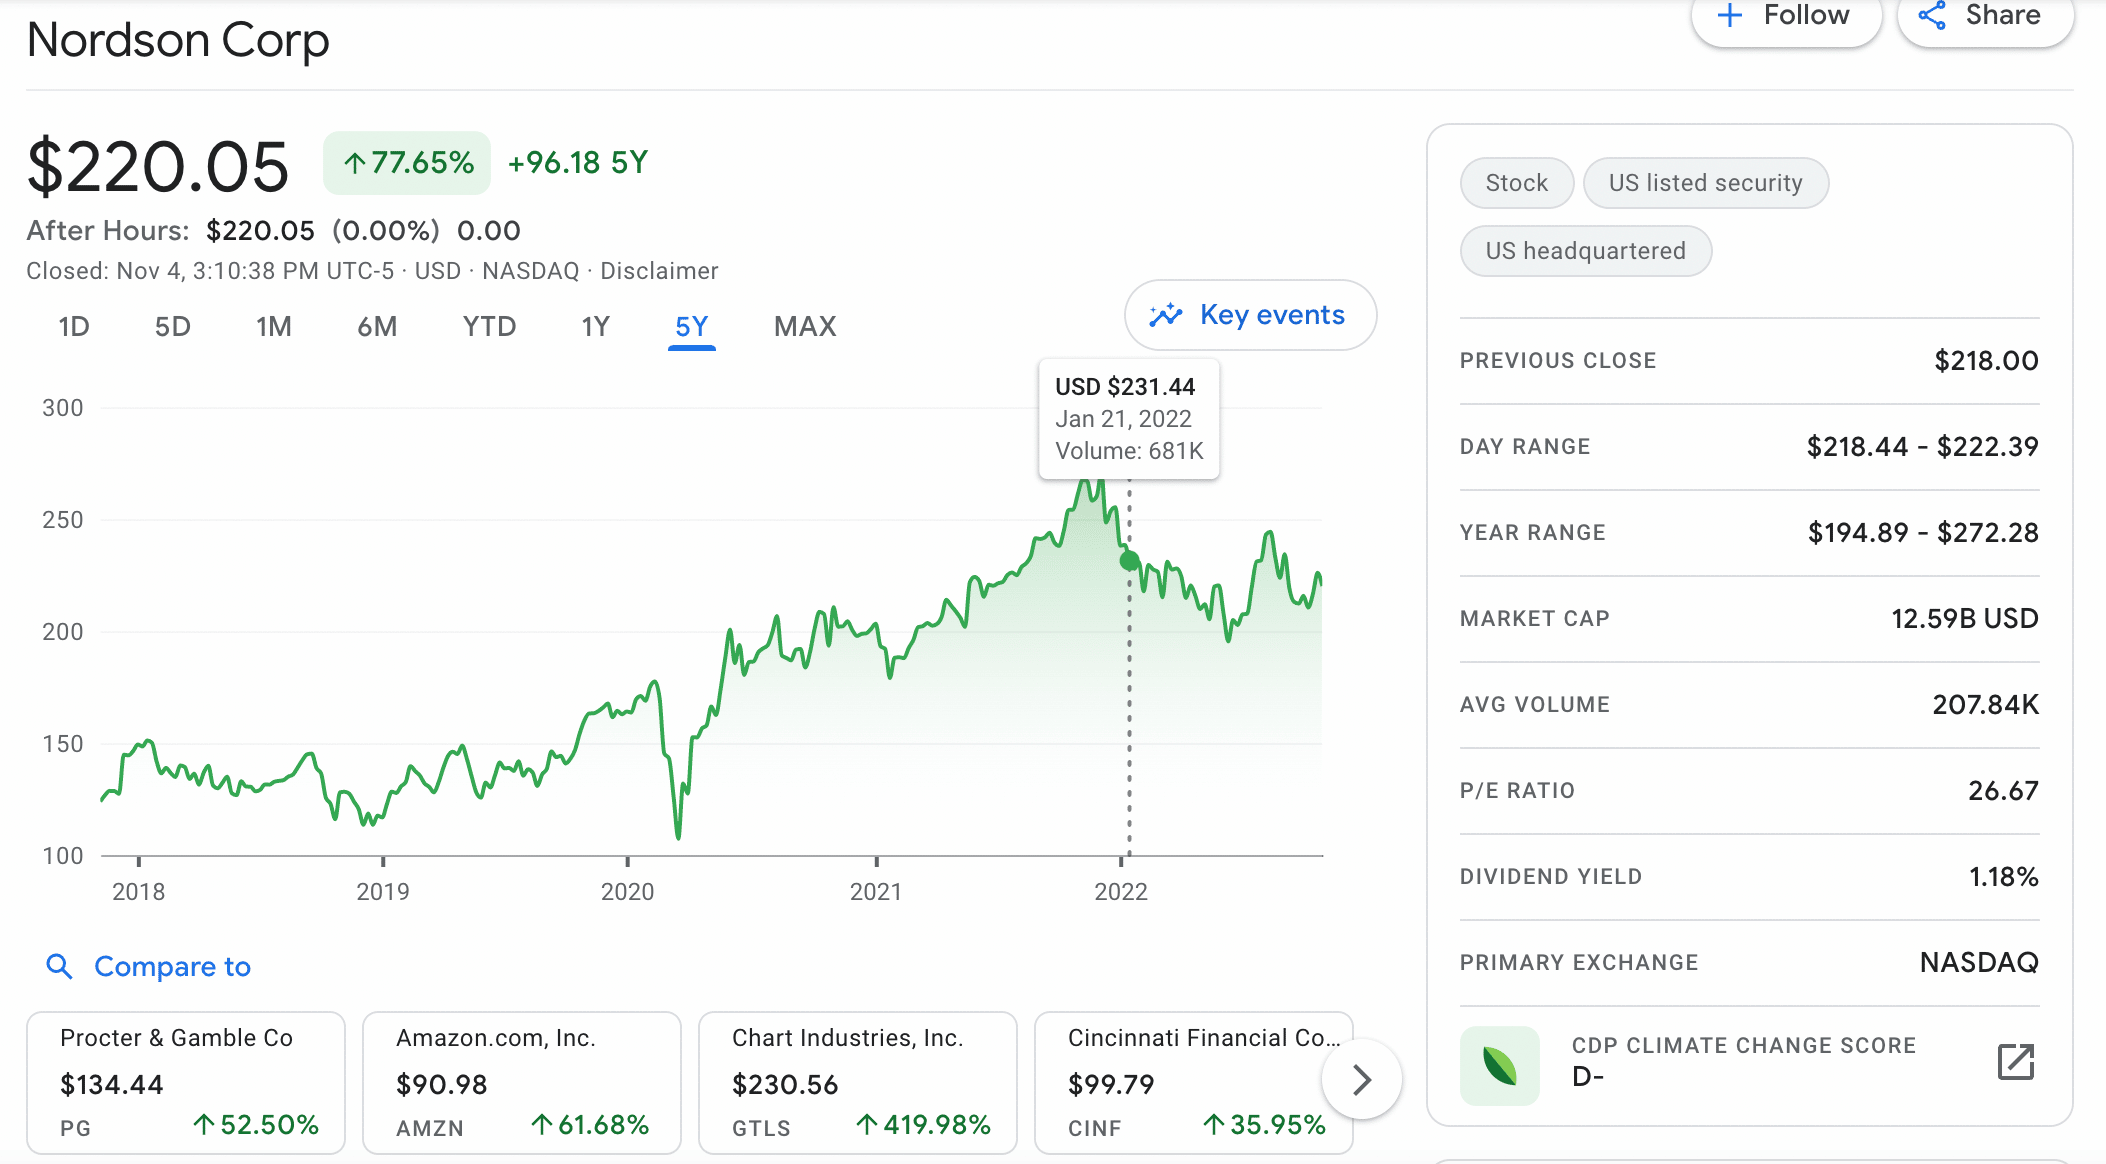 Nordson Corp stock price หุ้นปันผล